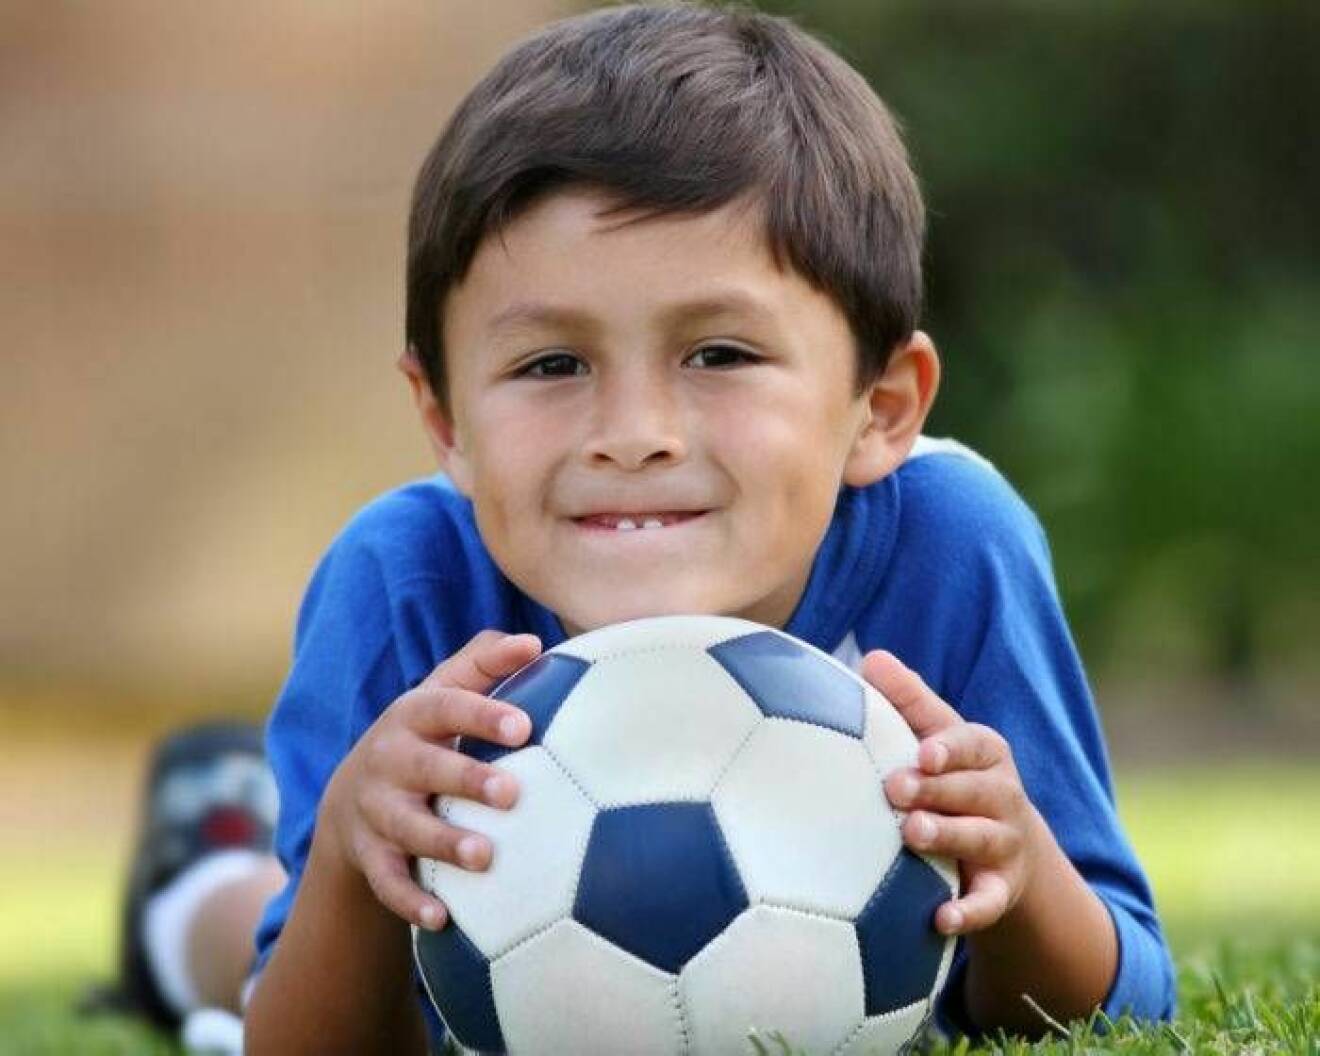 Pojke med fotboll